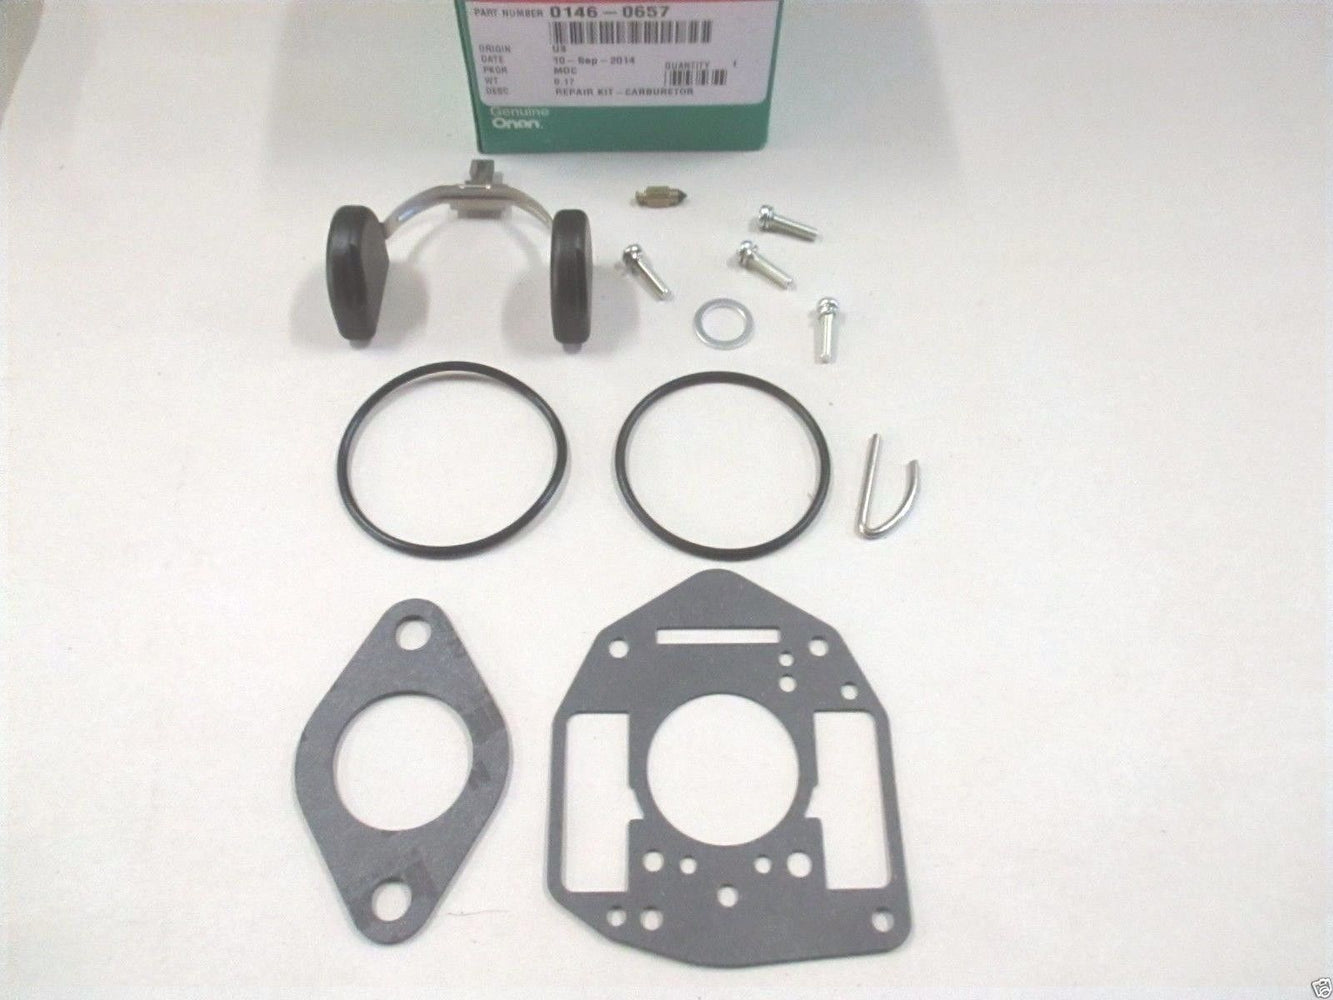 Genuine Onan 146-0657 Carburetor Repair Rebuild Kit For P216G P218G P220G P224G